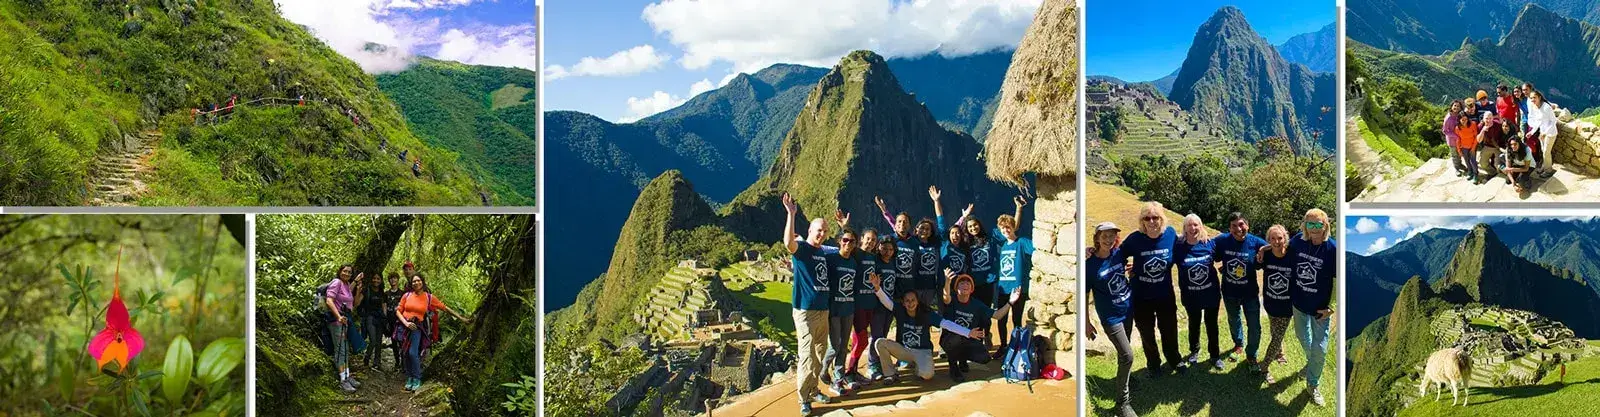 Lares Trek y Camino Inca a Machu Picchu Cusco 4 días y 3 noches - Local Trekkers Peru - Local Trekkers Peru